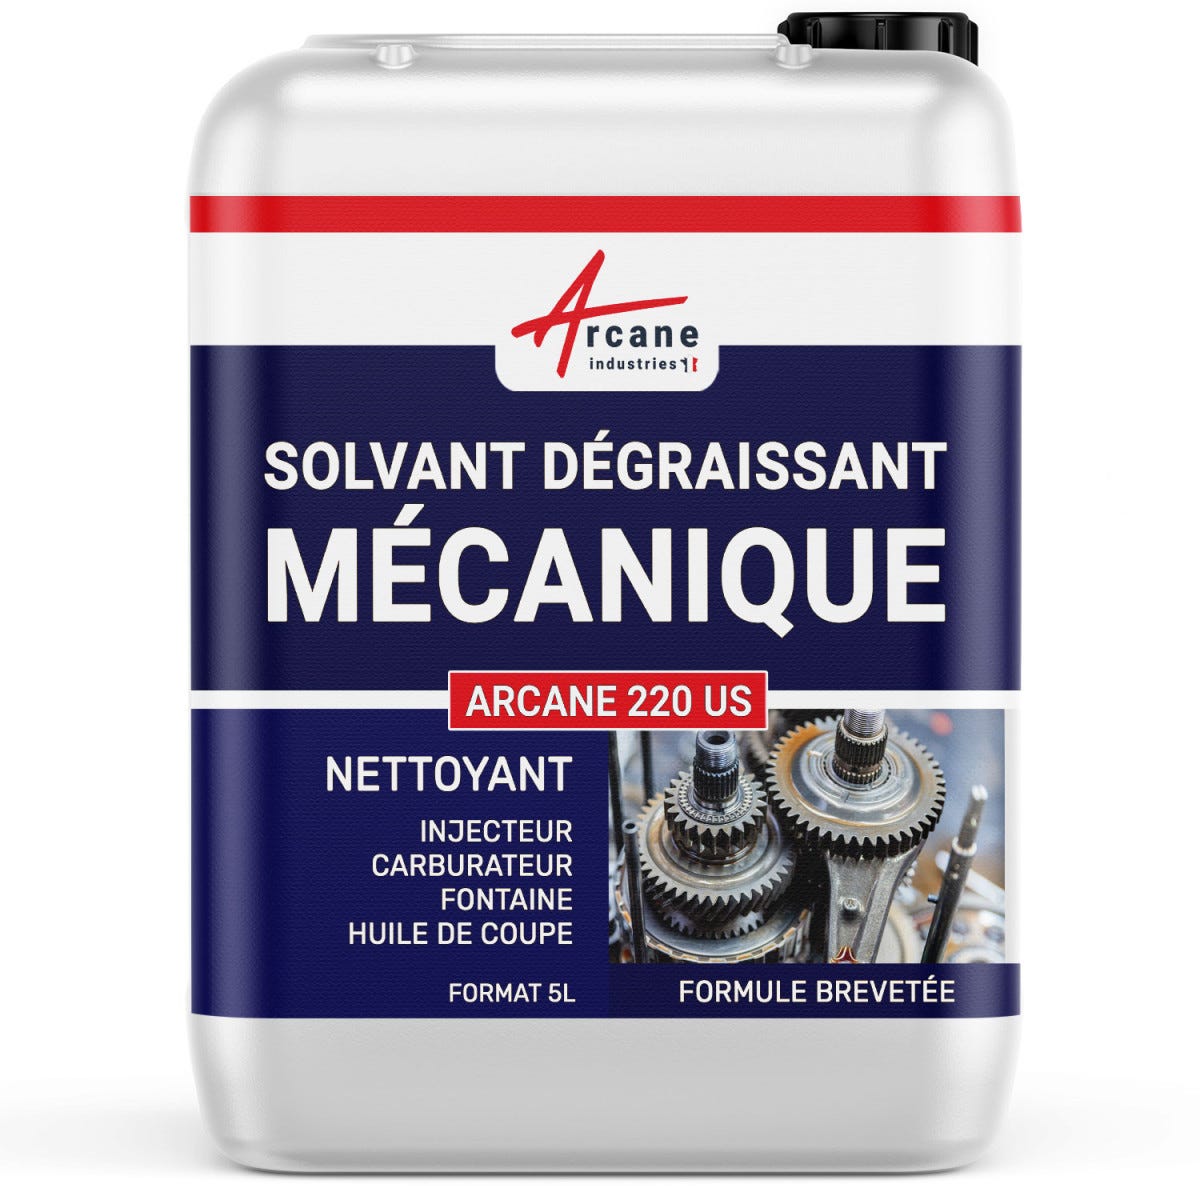 DÉGRAISSANT PIÈCES MÉCANIQUES : Pou injecteur carburateur Fontaine graisse huile de coupe - 5 LARCANE INDUSTRIES 0